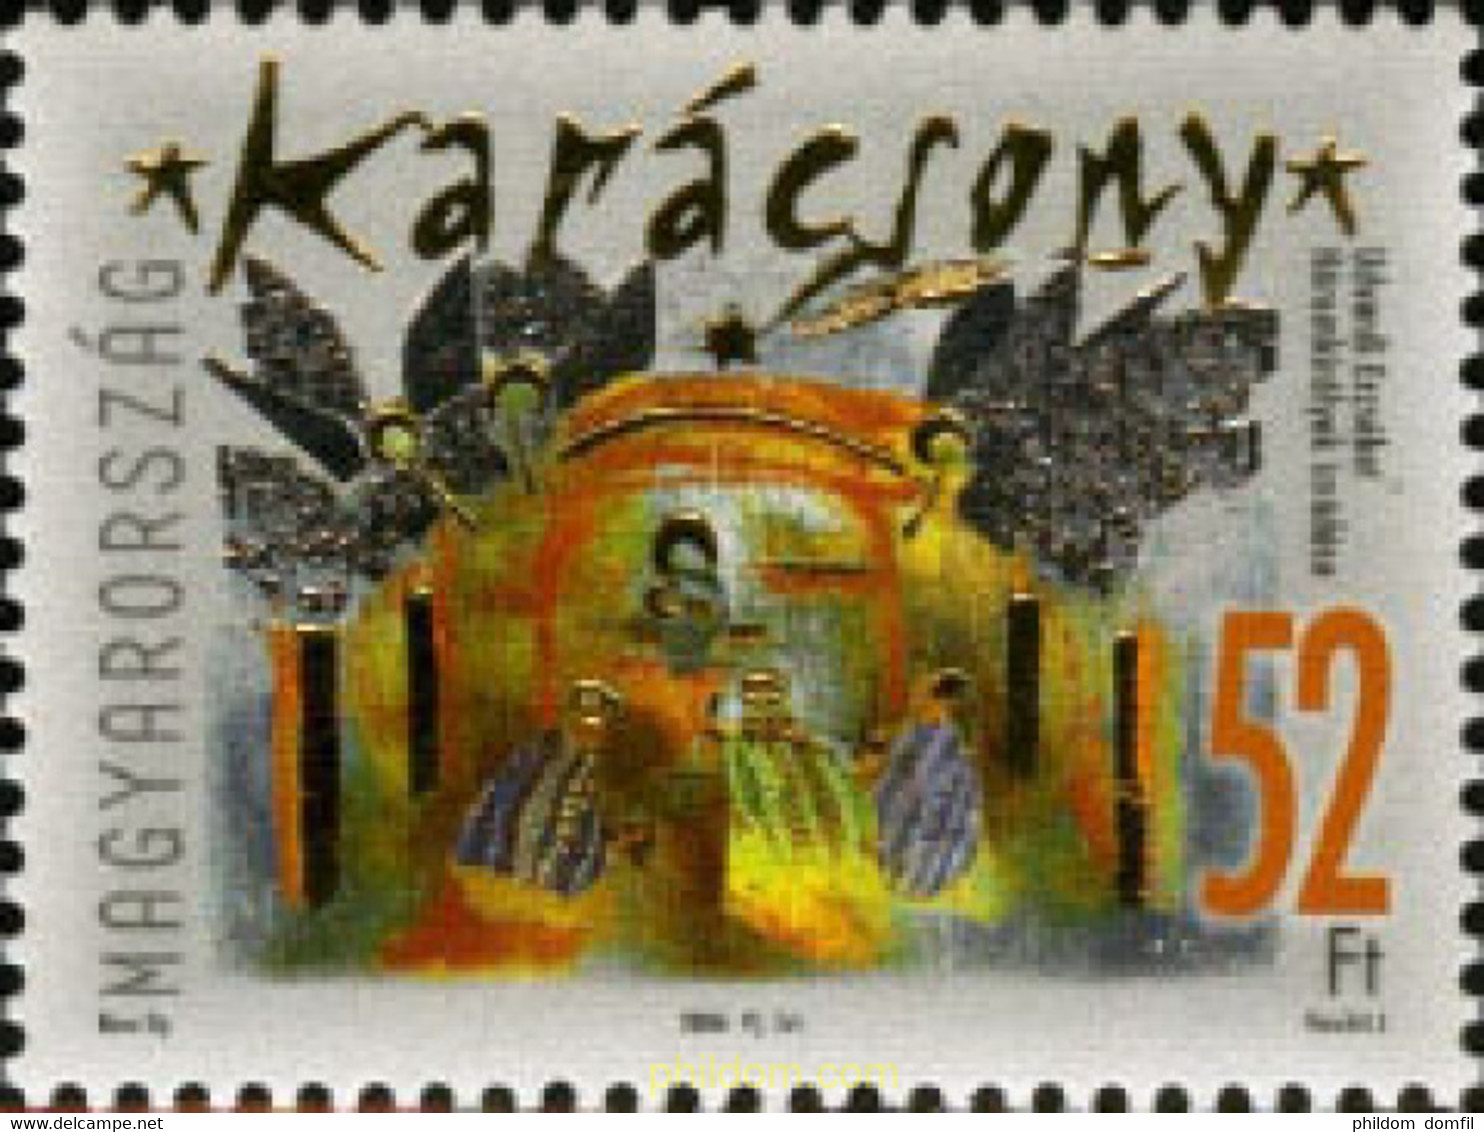 196105 MNH HUNGRIA 2006 NAVIDAD - Used Stamps